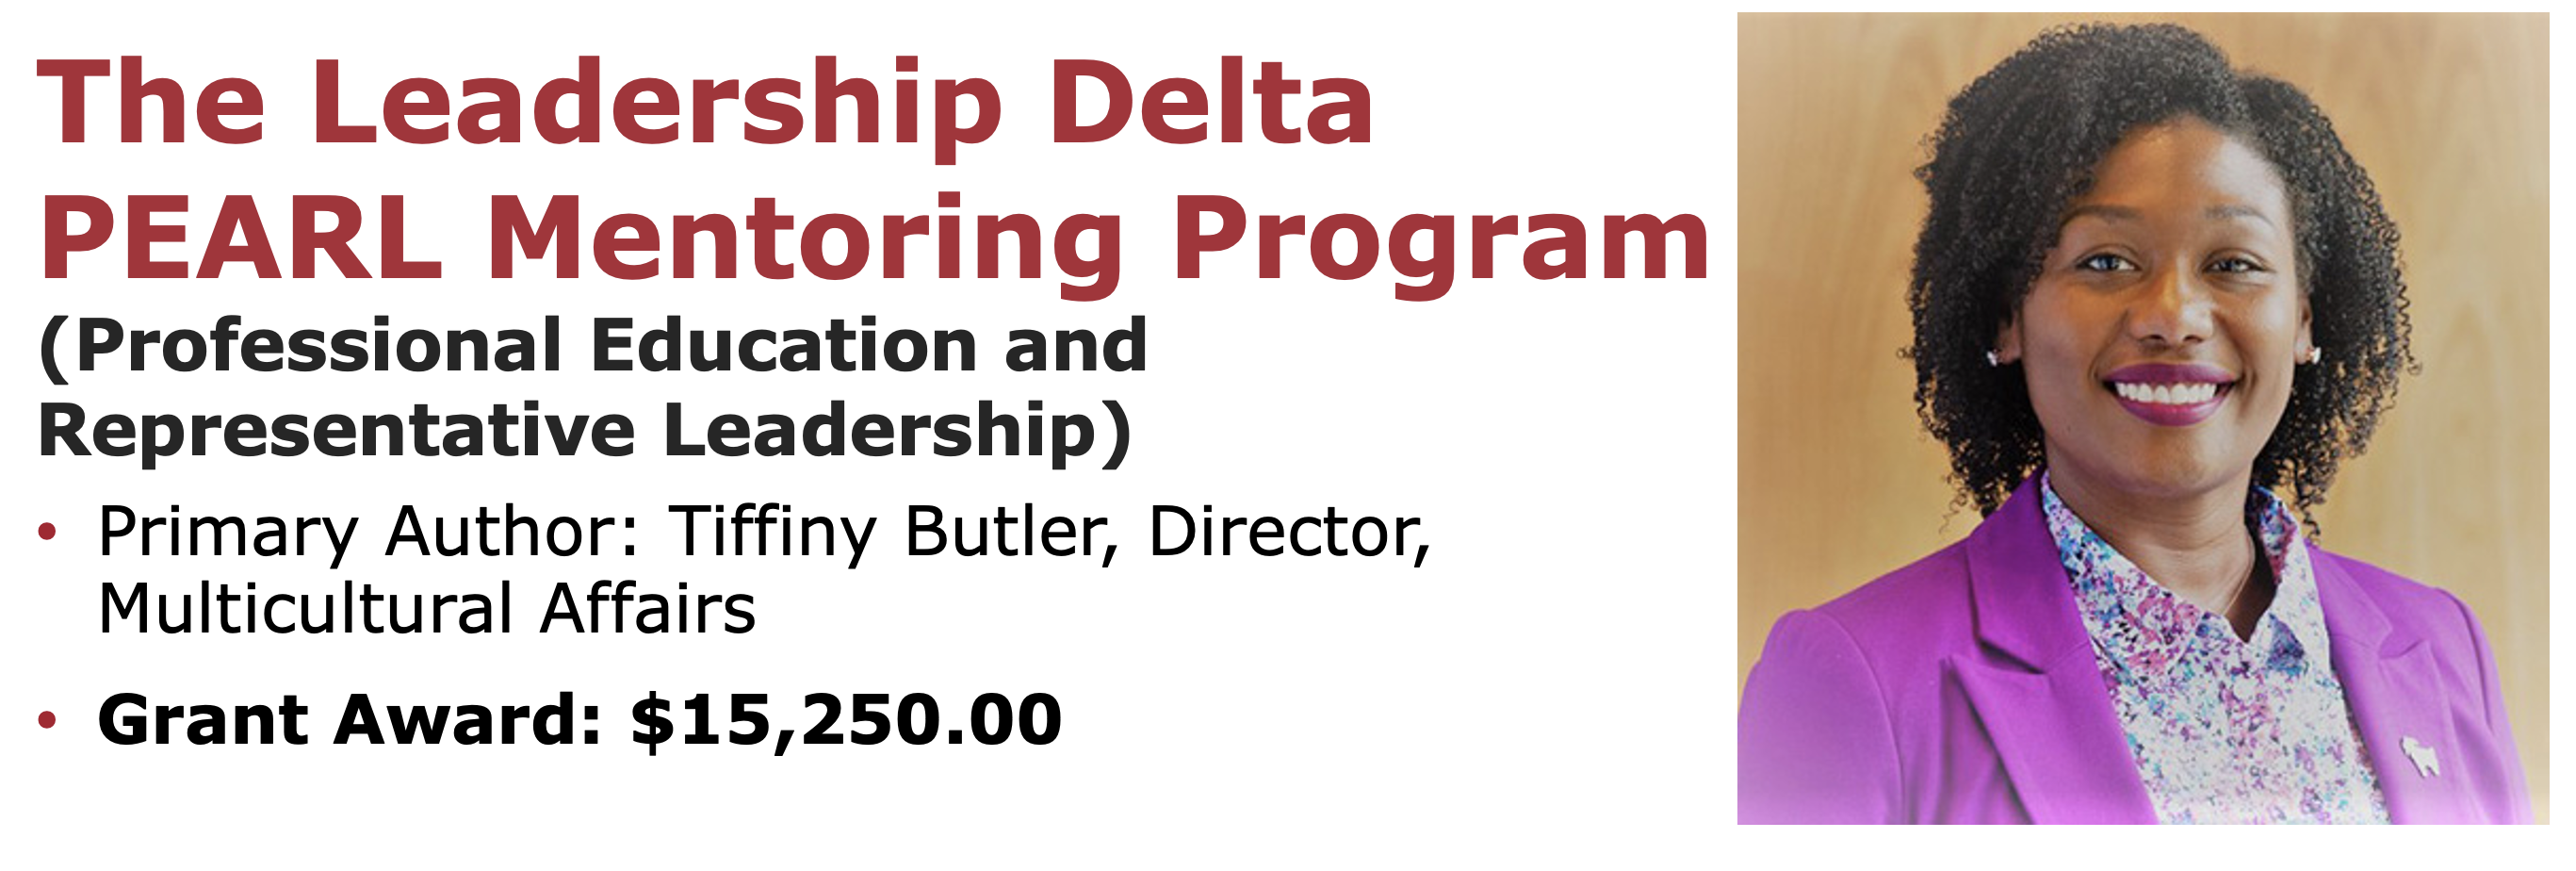 The Leadership Delta PEARL Mentoring Program